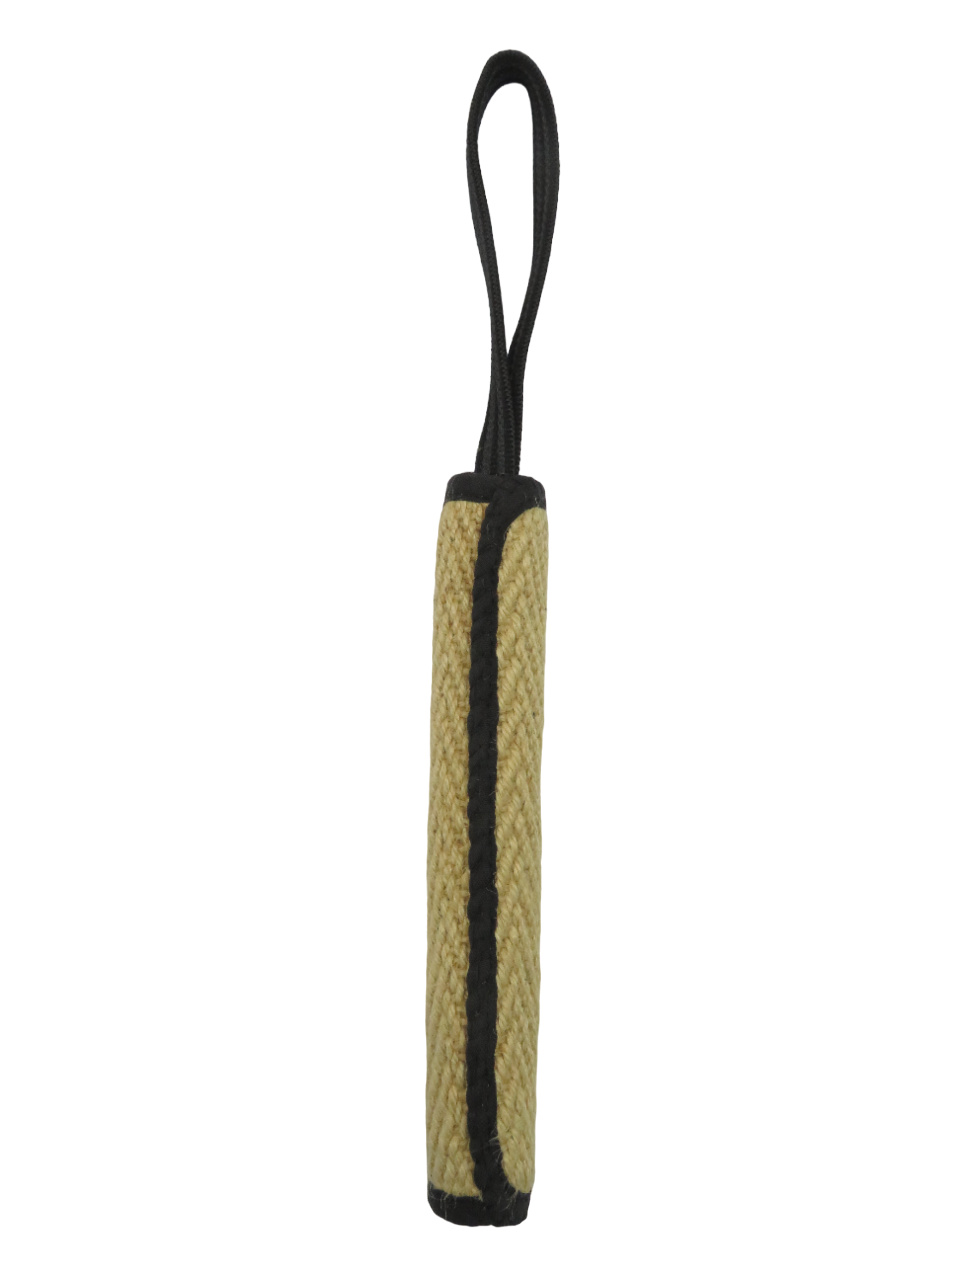 BOW WOW BOW WOW джутовая палка с 9-миллиметровой прорезиненной ручкой (натуральная) (120 г)